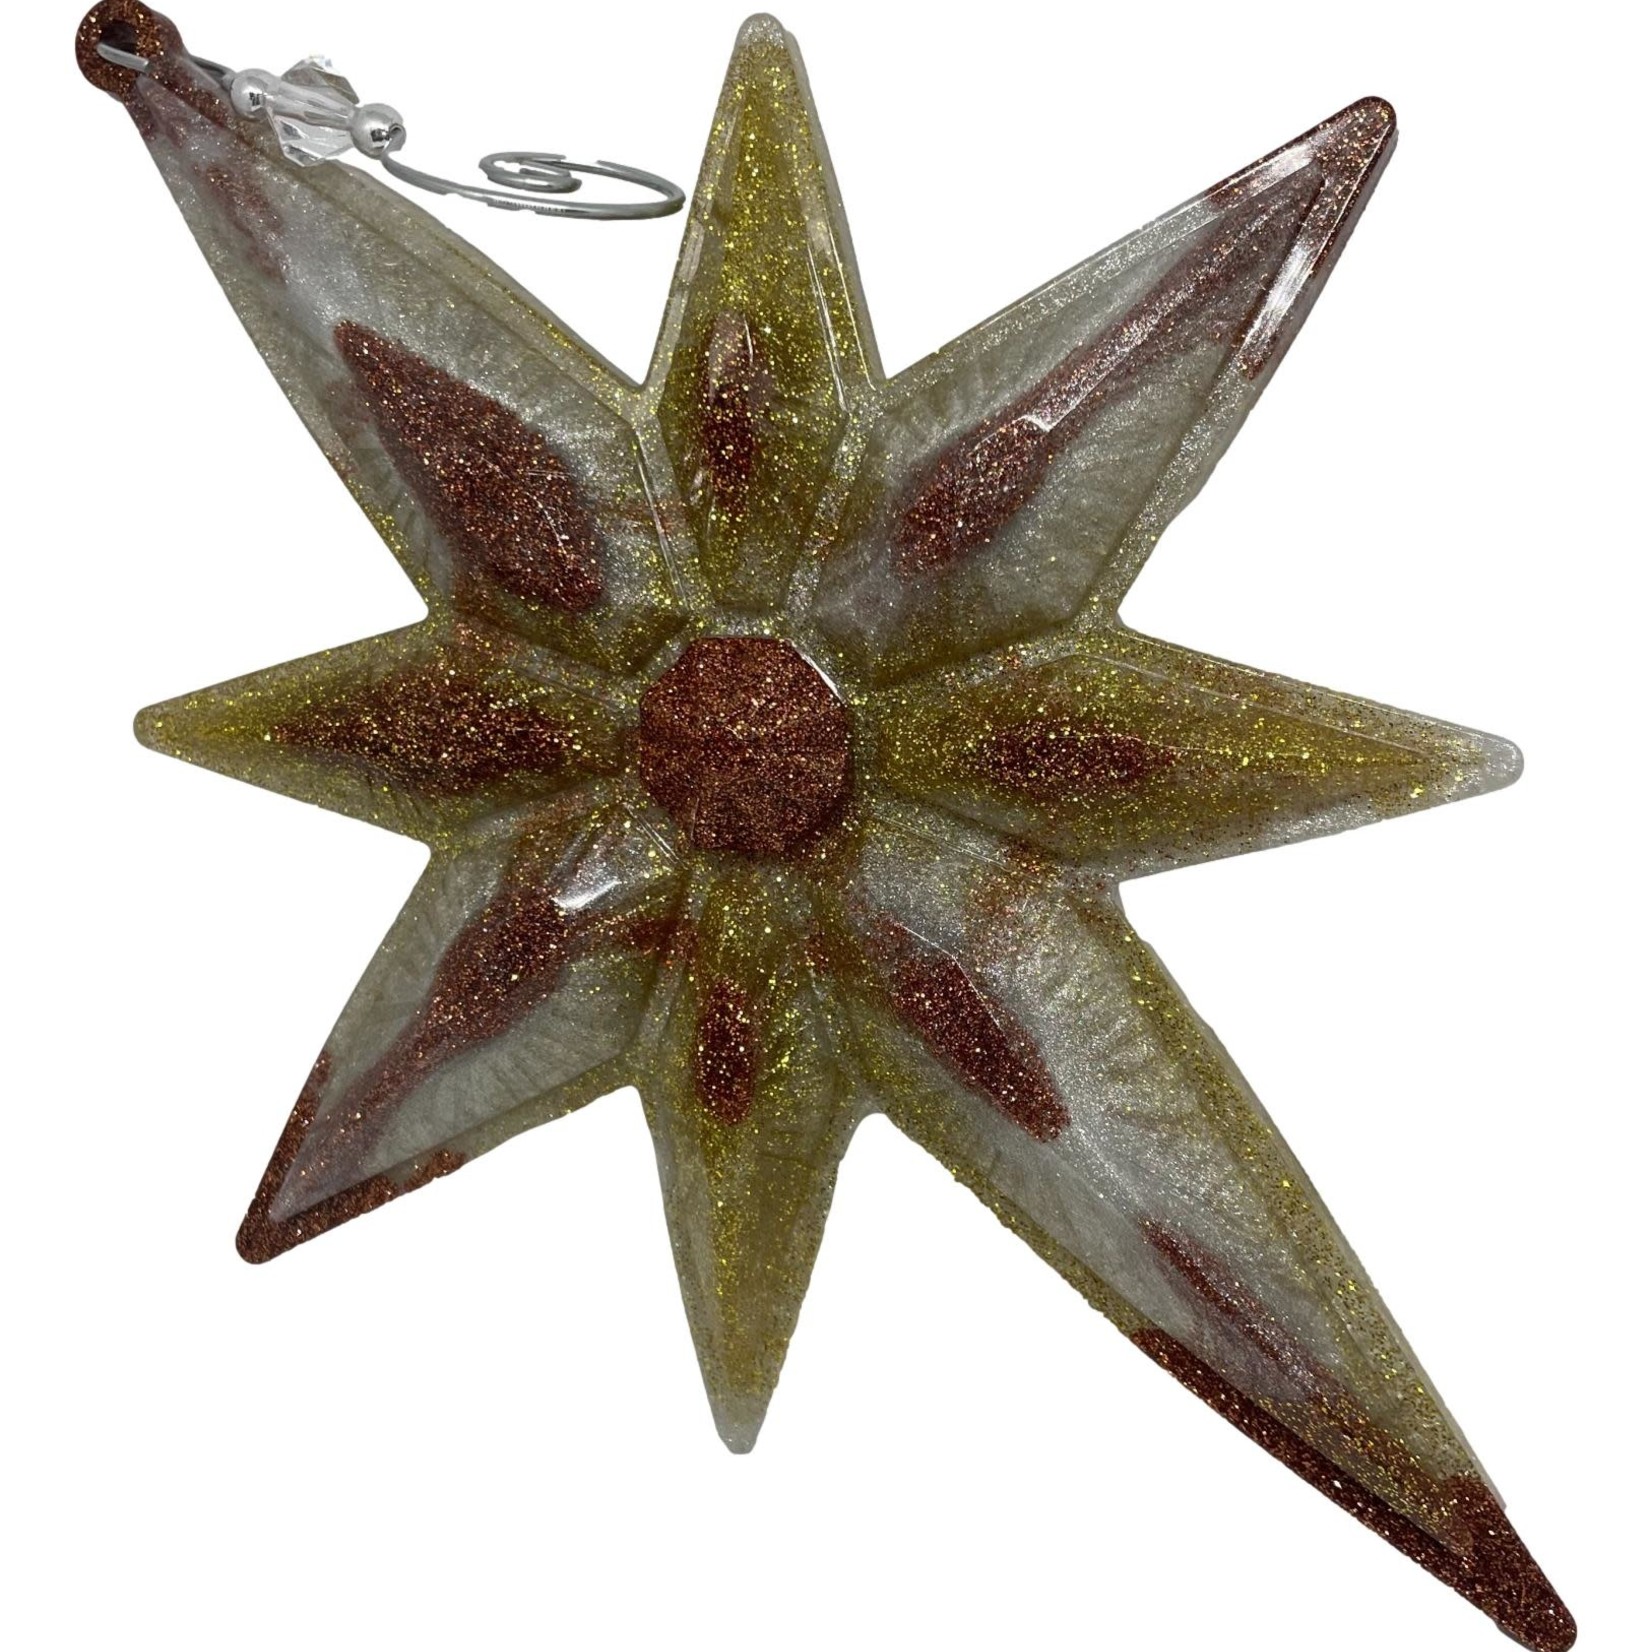 East Coast Sirens Precious Metals  Star Ornament